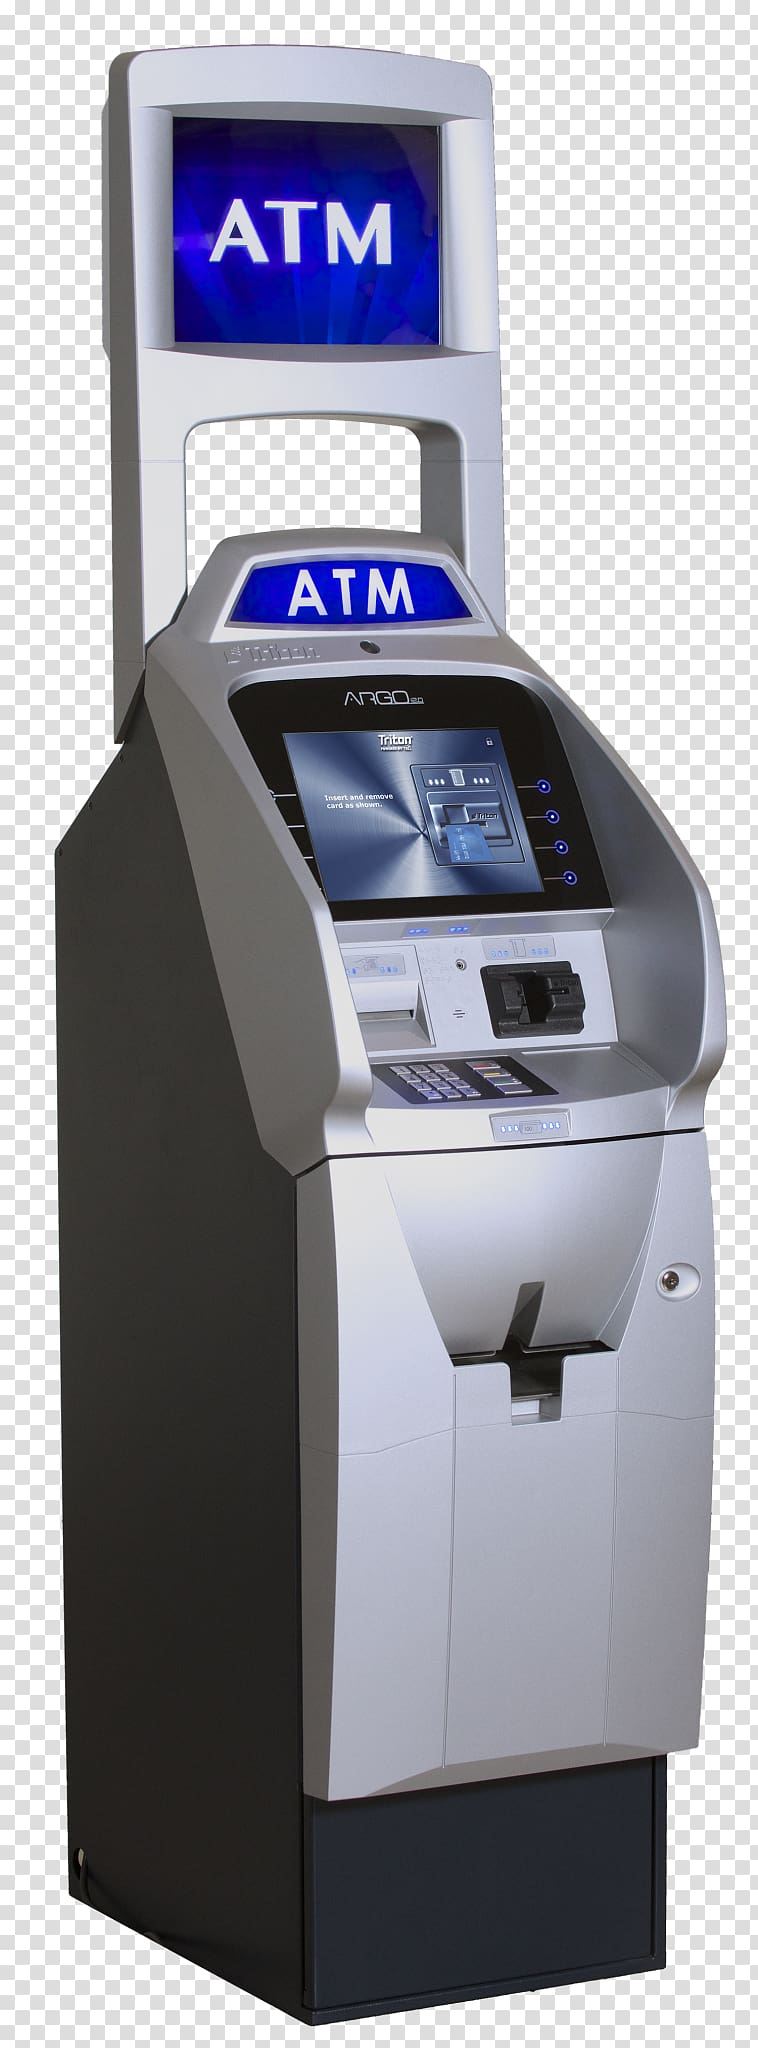 Automated teller machine EMV Triton Bank Cash, atm transparent background PNG clipart